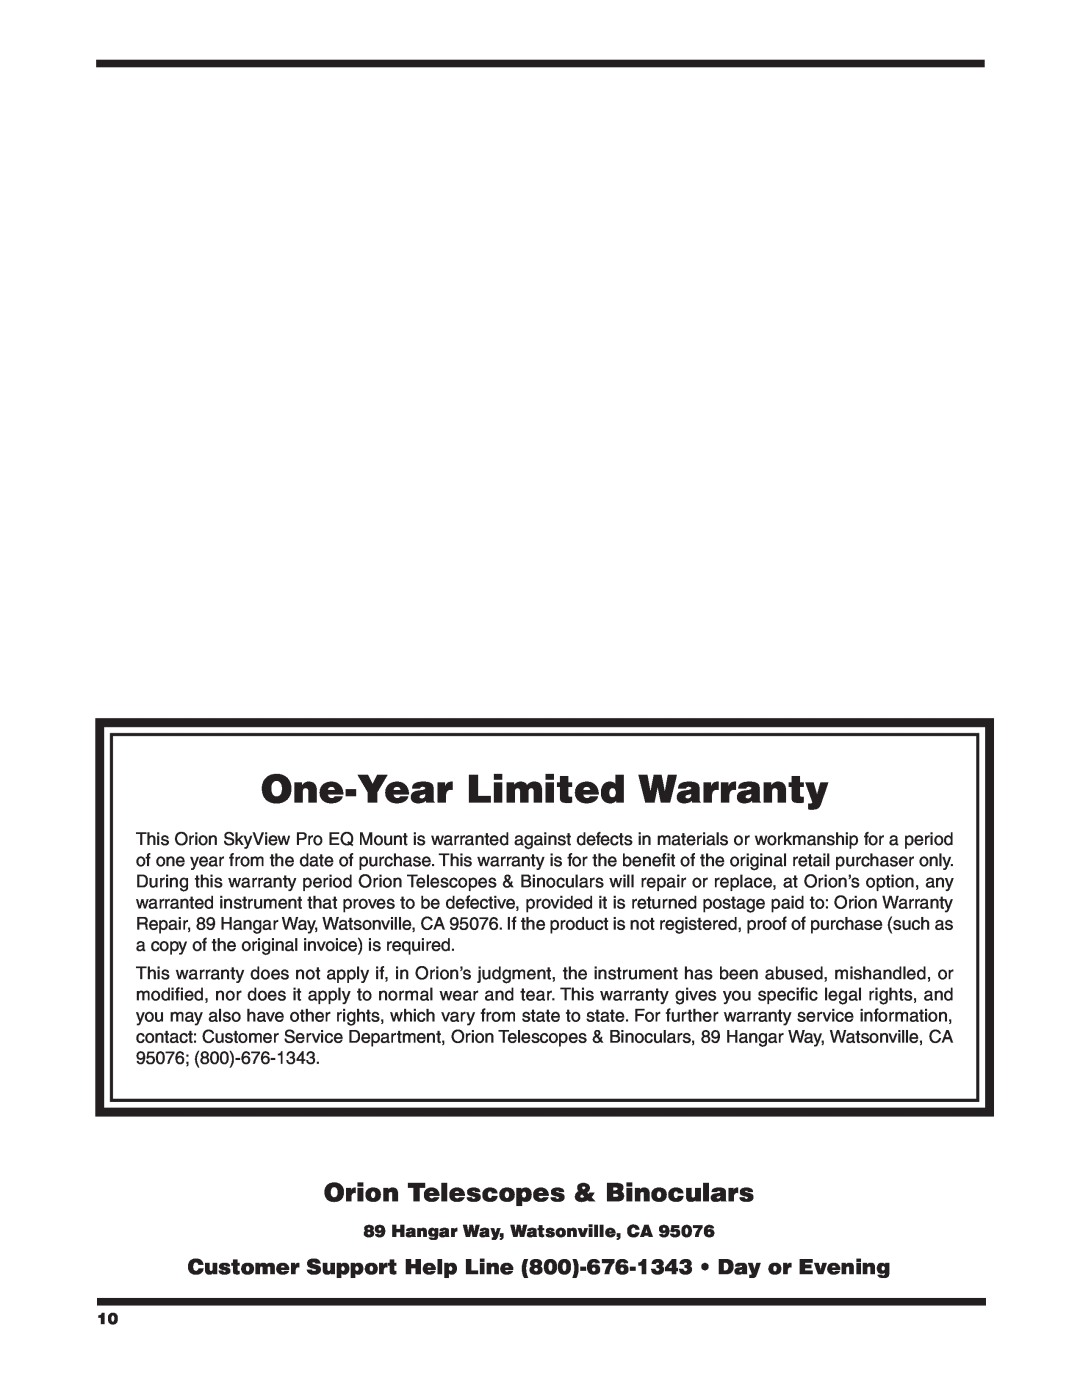 Orion 9829 instruction manual Hangar Way, Watsonville, CA, One-Year Limited Warranty, Orion Telescopes & Binoculars 